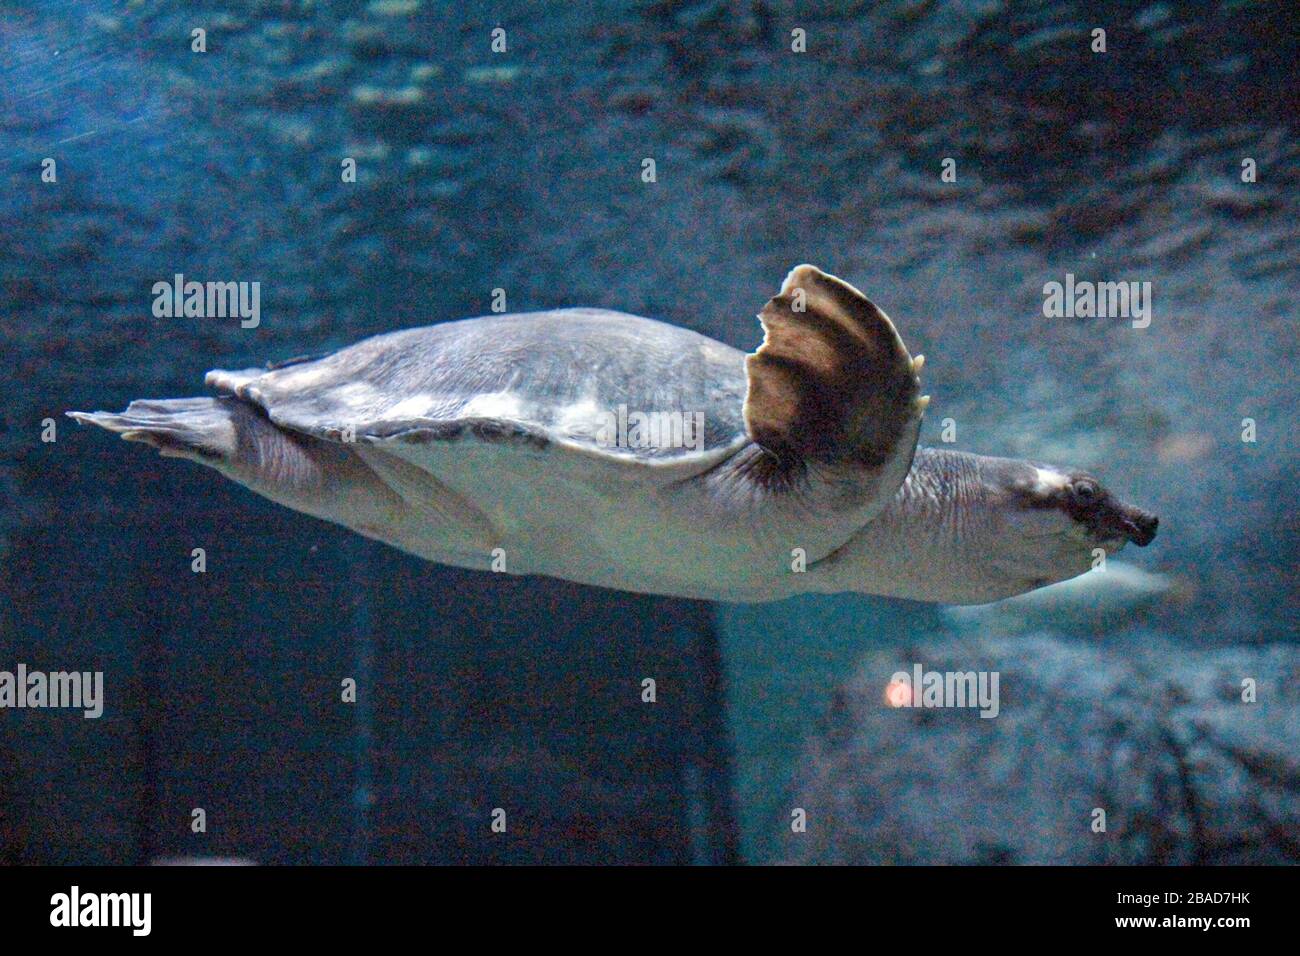 Shanghai, Shanghai, Chine. 27 mars 2020. L'aquarium marin de Shanghai est l'un des plus grands aquarium artificiel au monde, avec une zone d'exposition biologique et écologique unique dans le bassin fluvial de Yangtze en Chine. Crédit: ZUMA Press, Inc./Alay Live News Banque D'Images